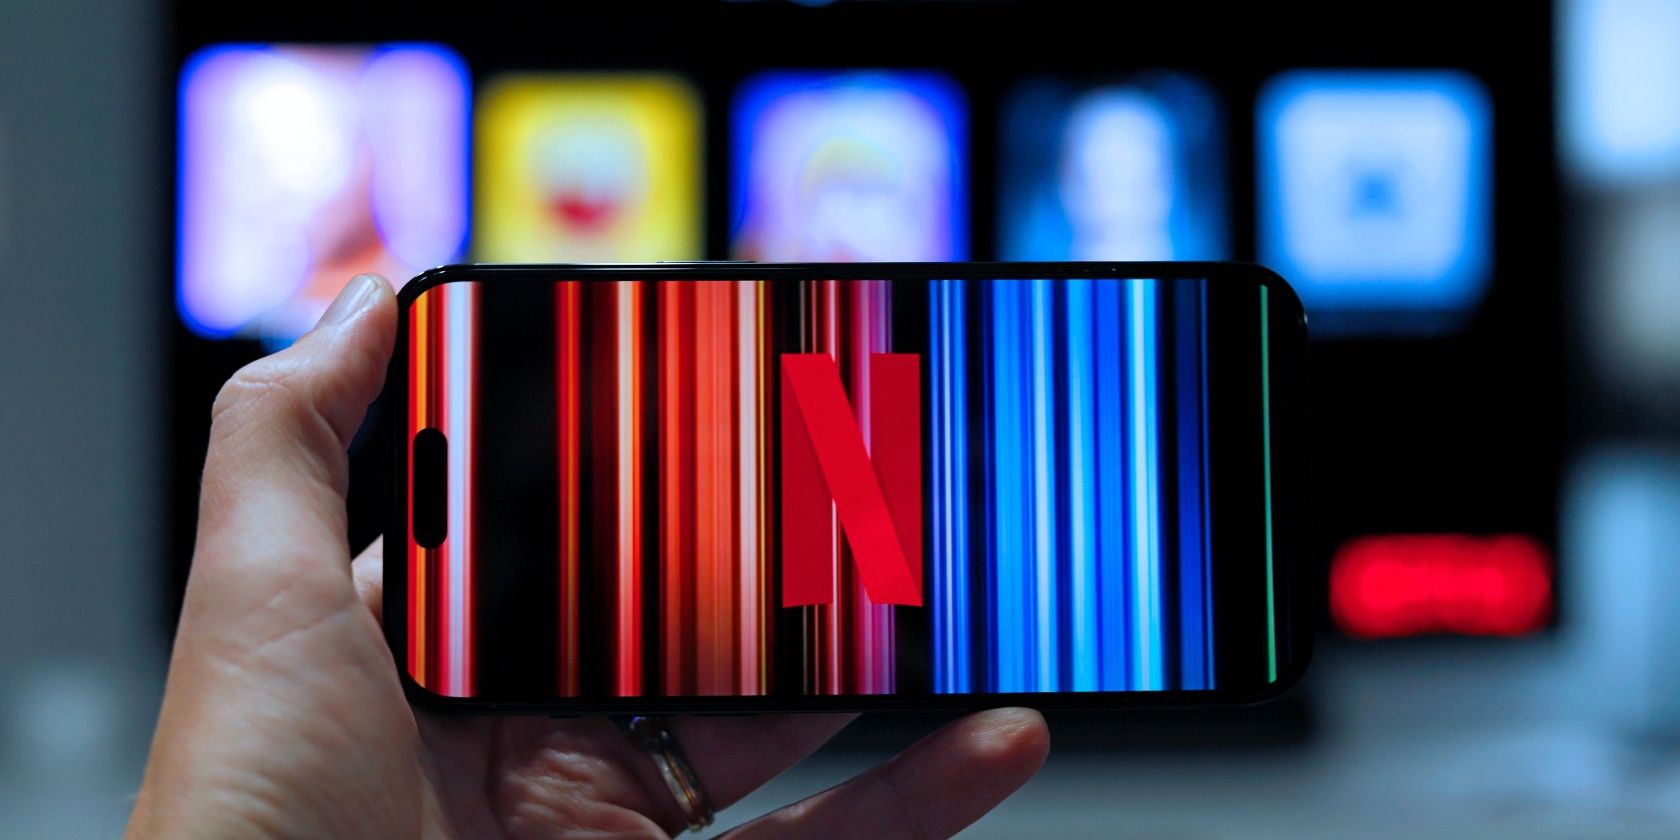 O mână ține un telefon mobil cu sigla Netflix pe ecran